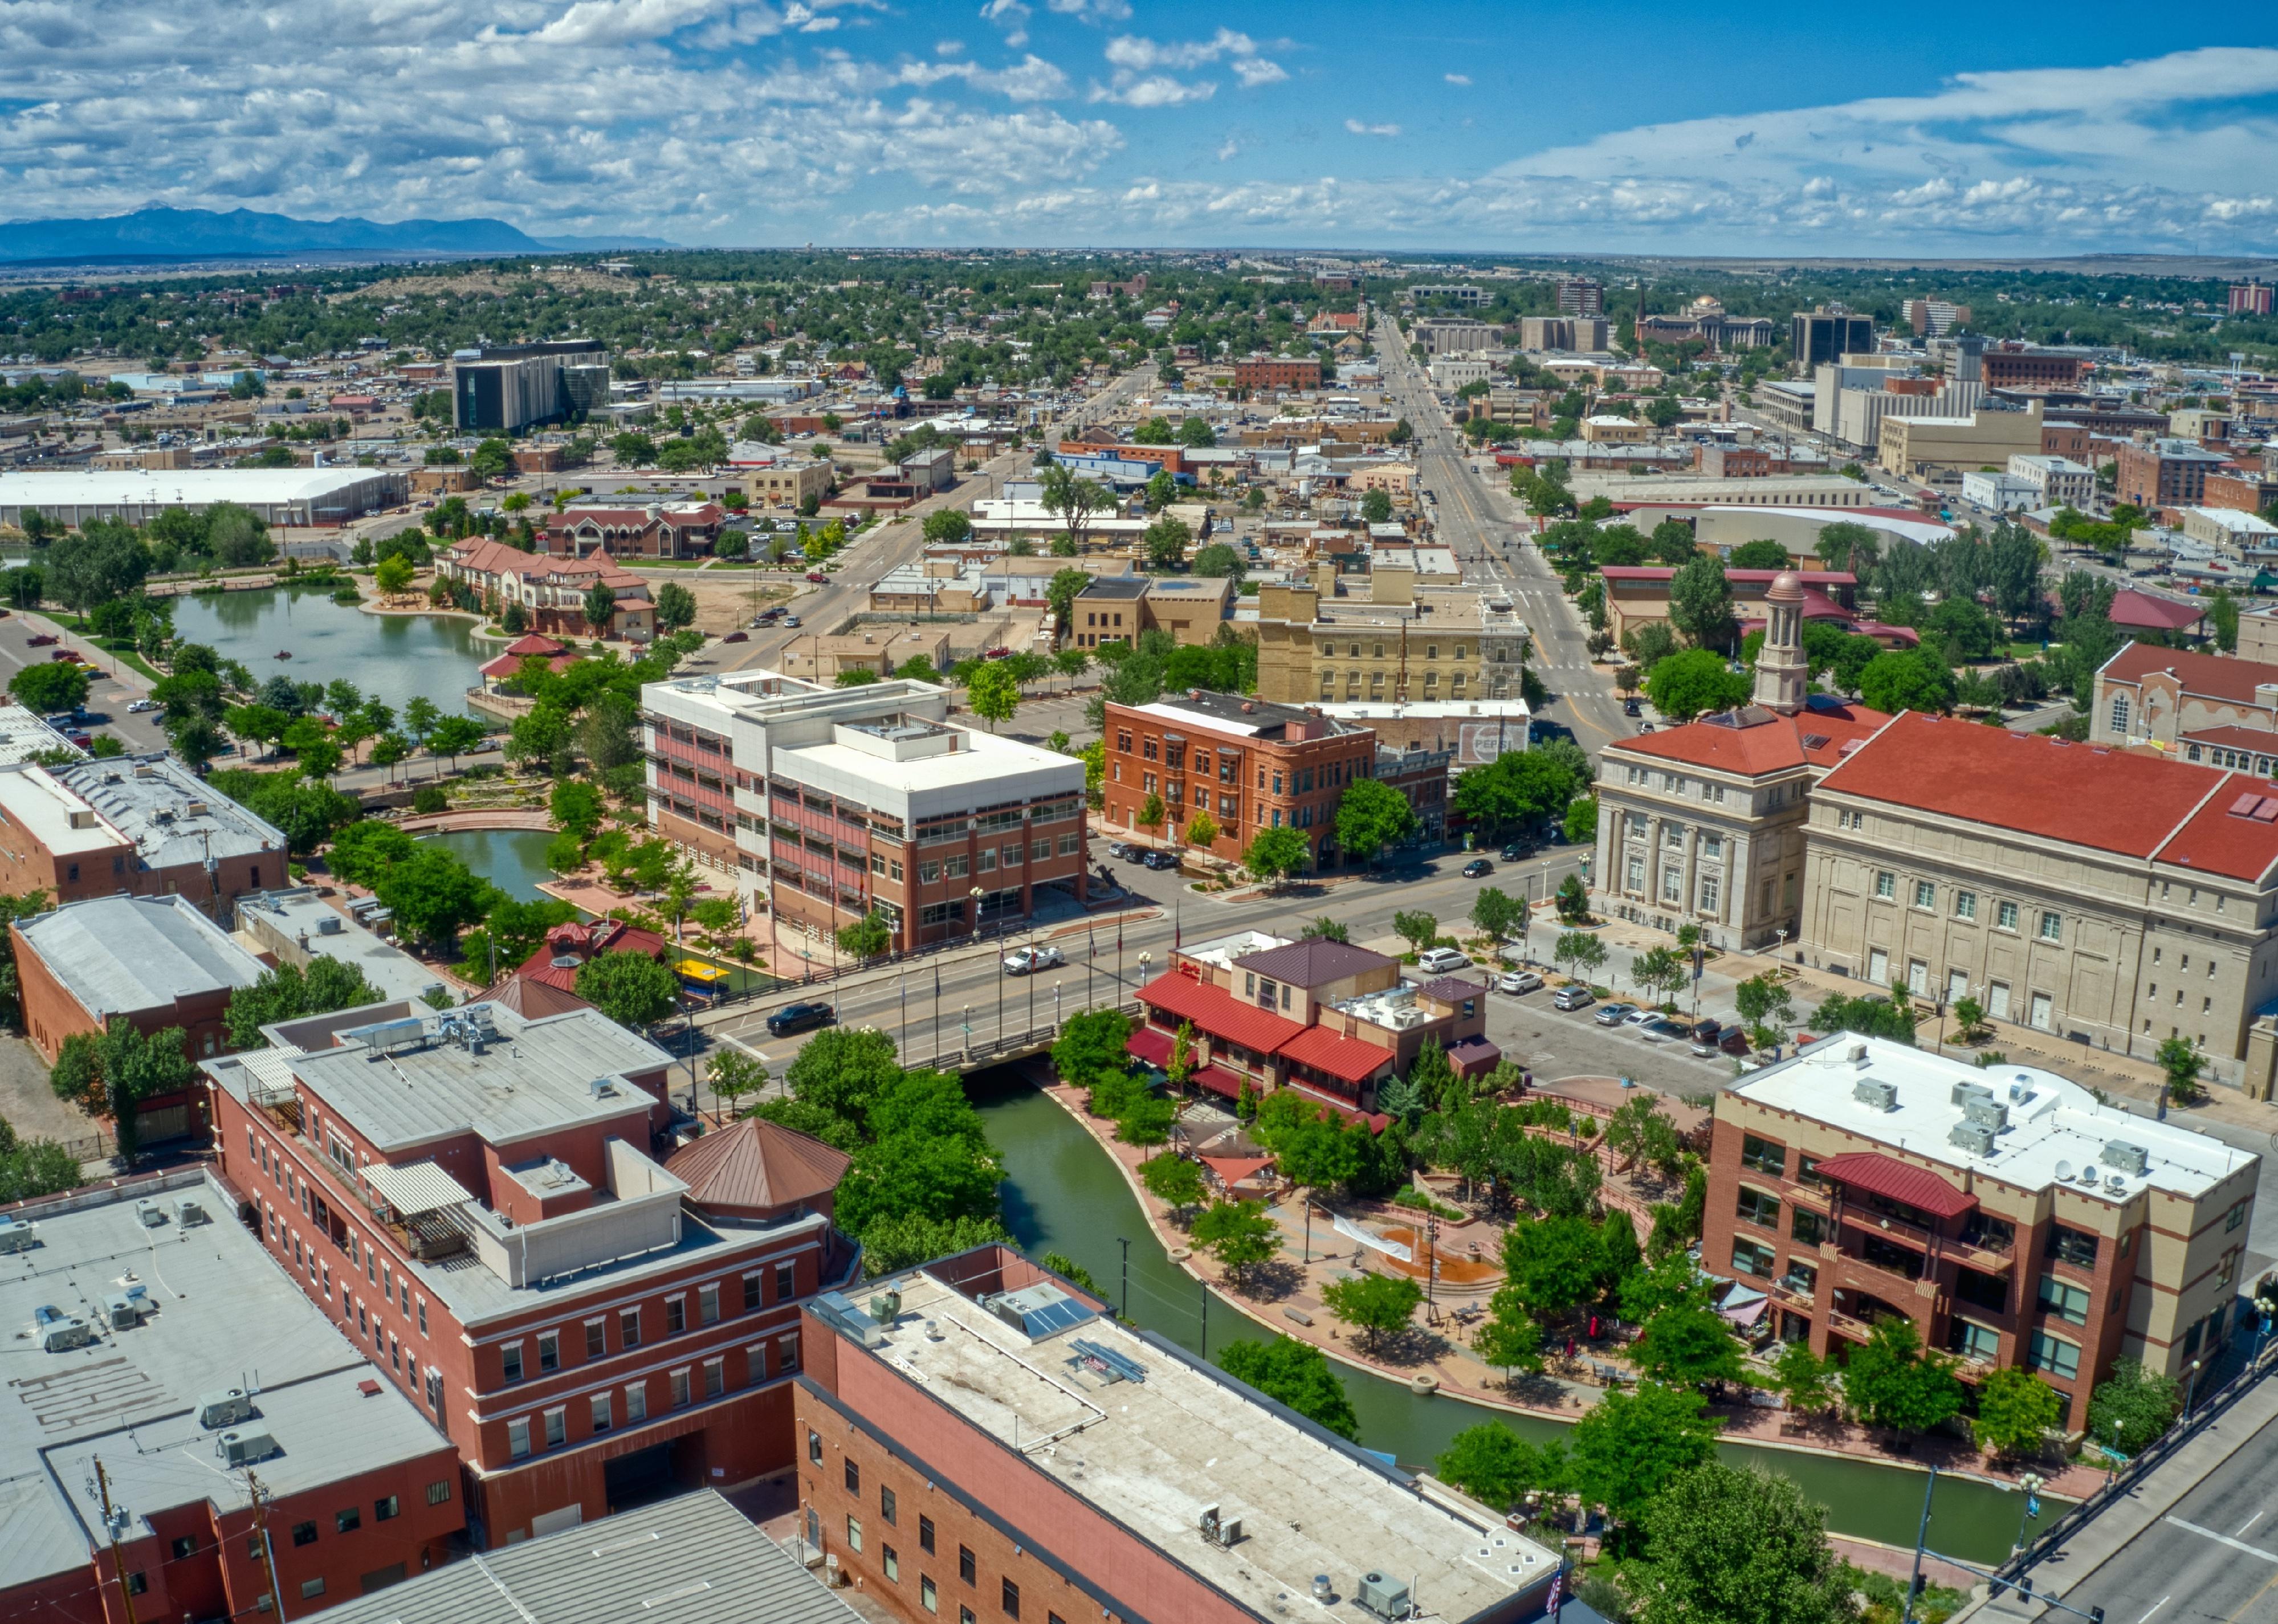 Downtown Pueblo, Colorado during summer.